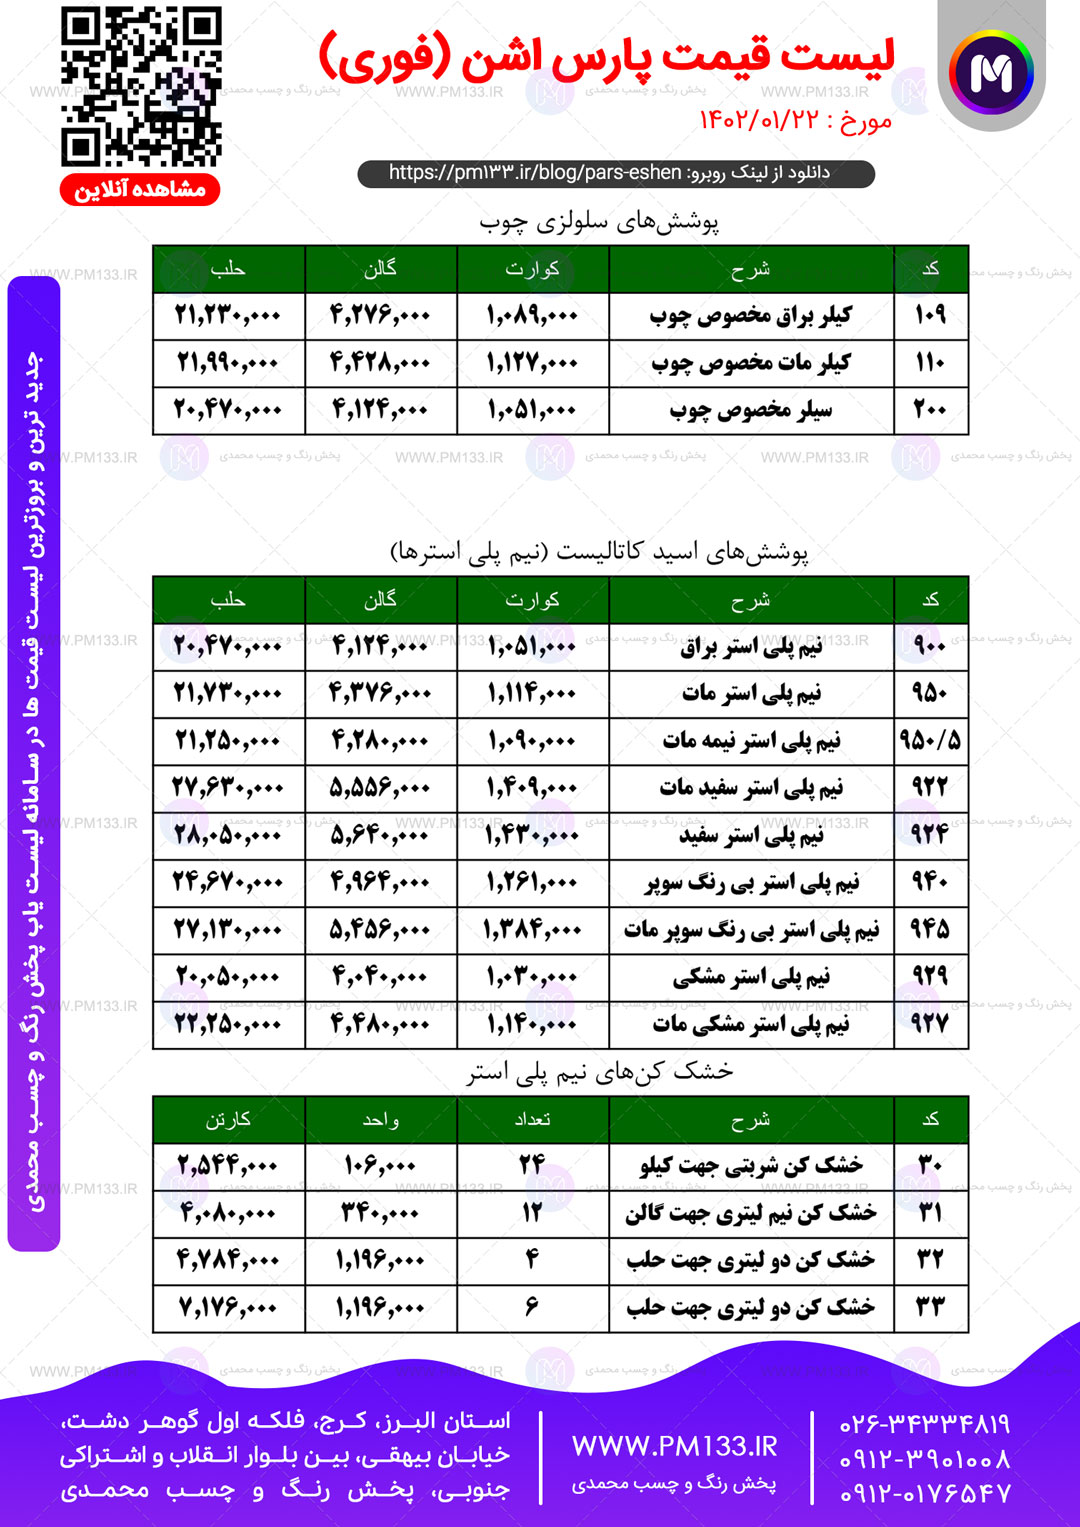 لیست قیمت پارس اشن مورخ 22-01-1402 صفحه1